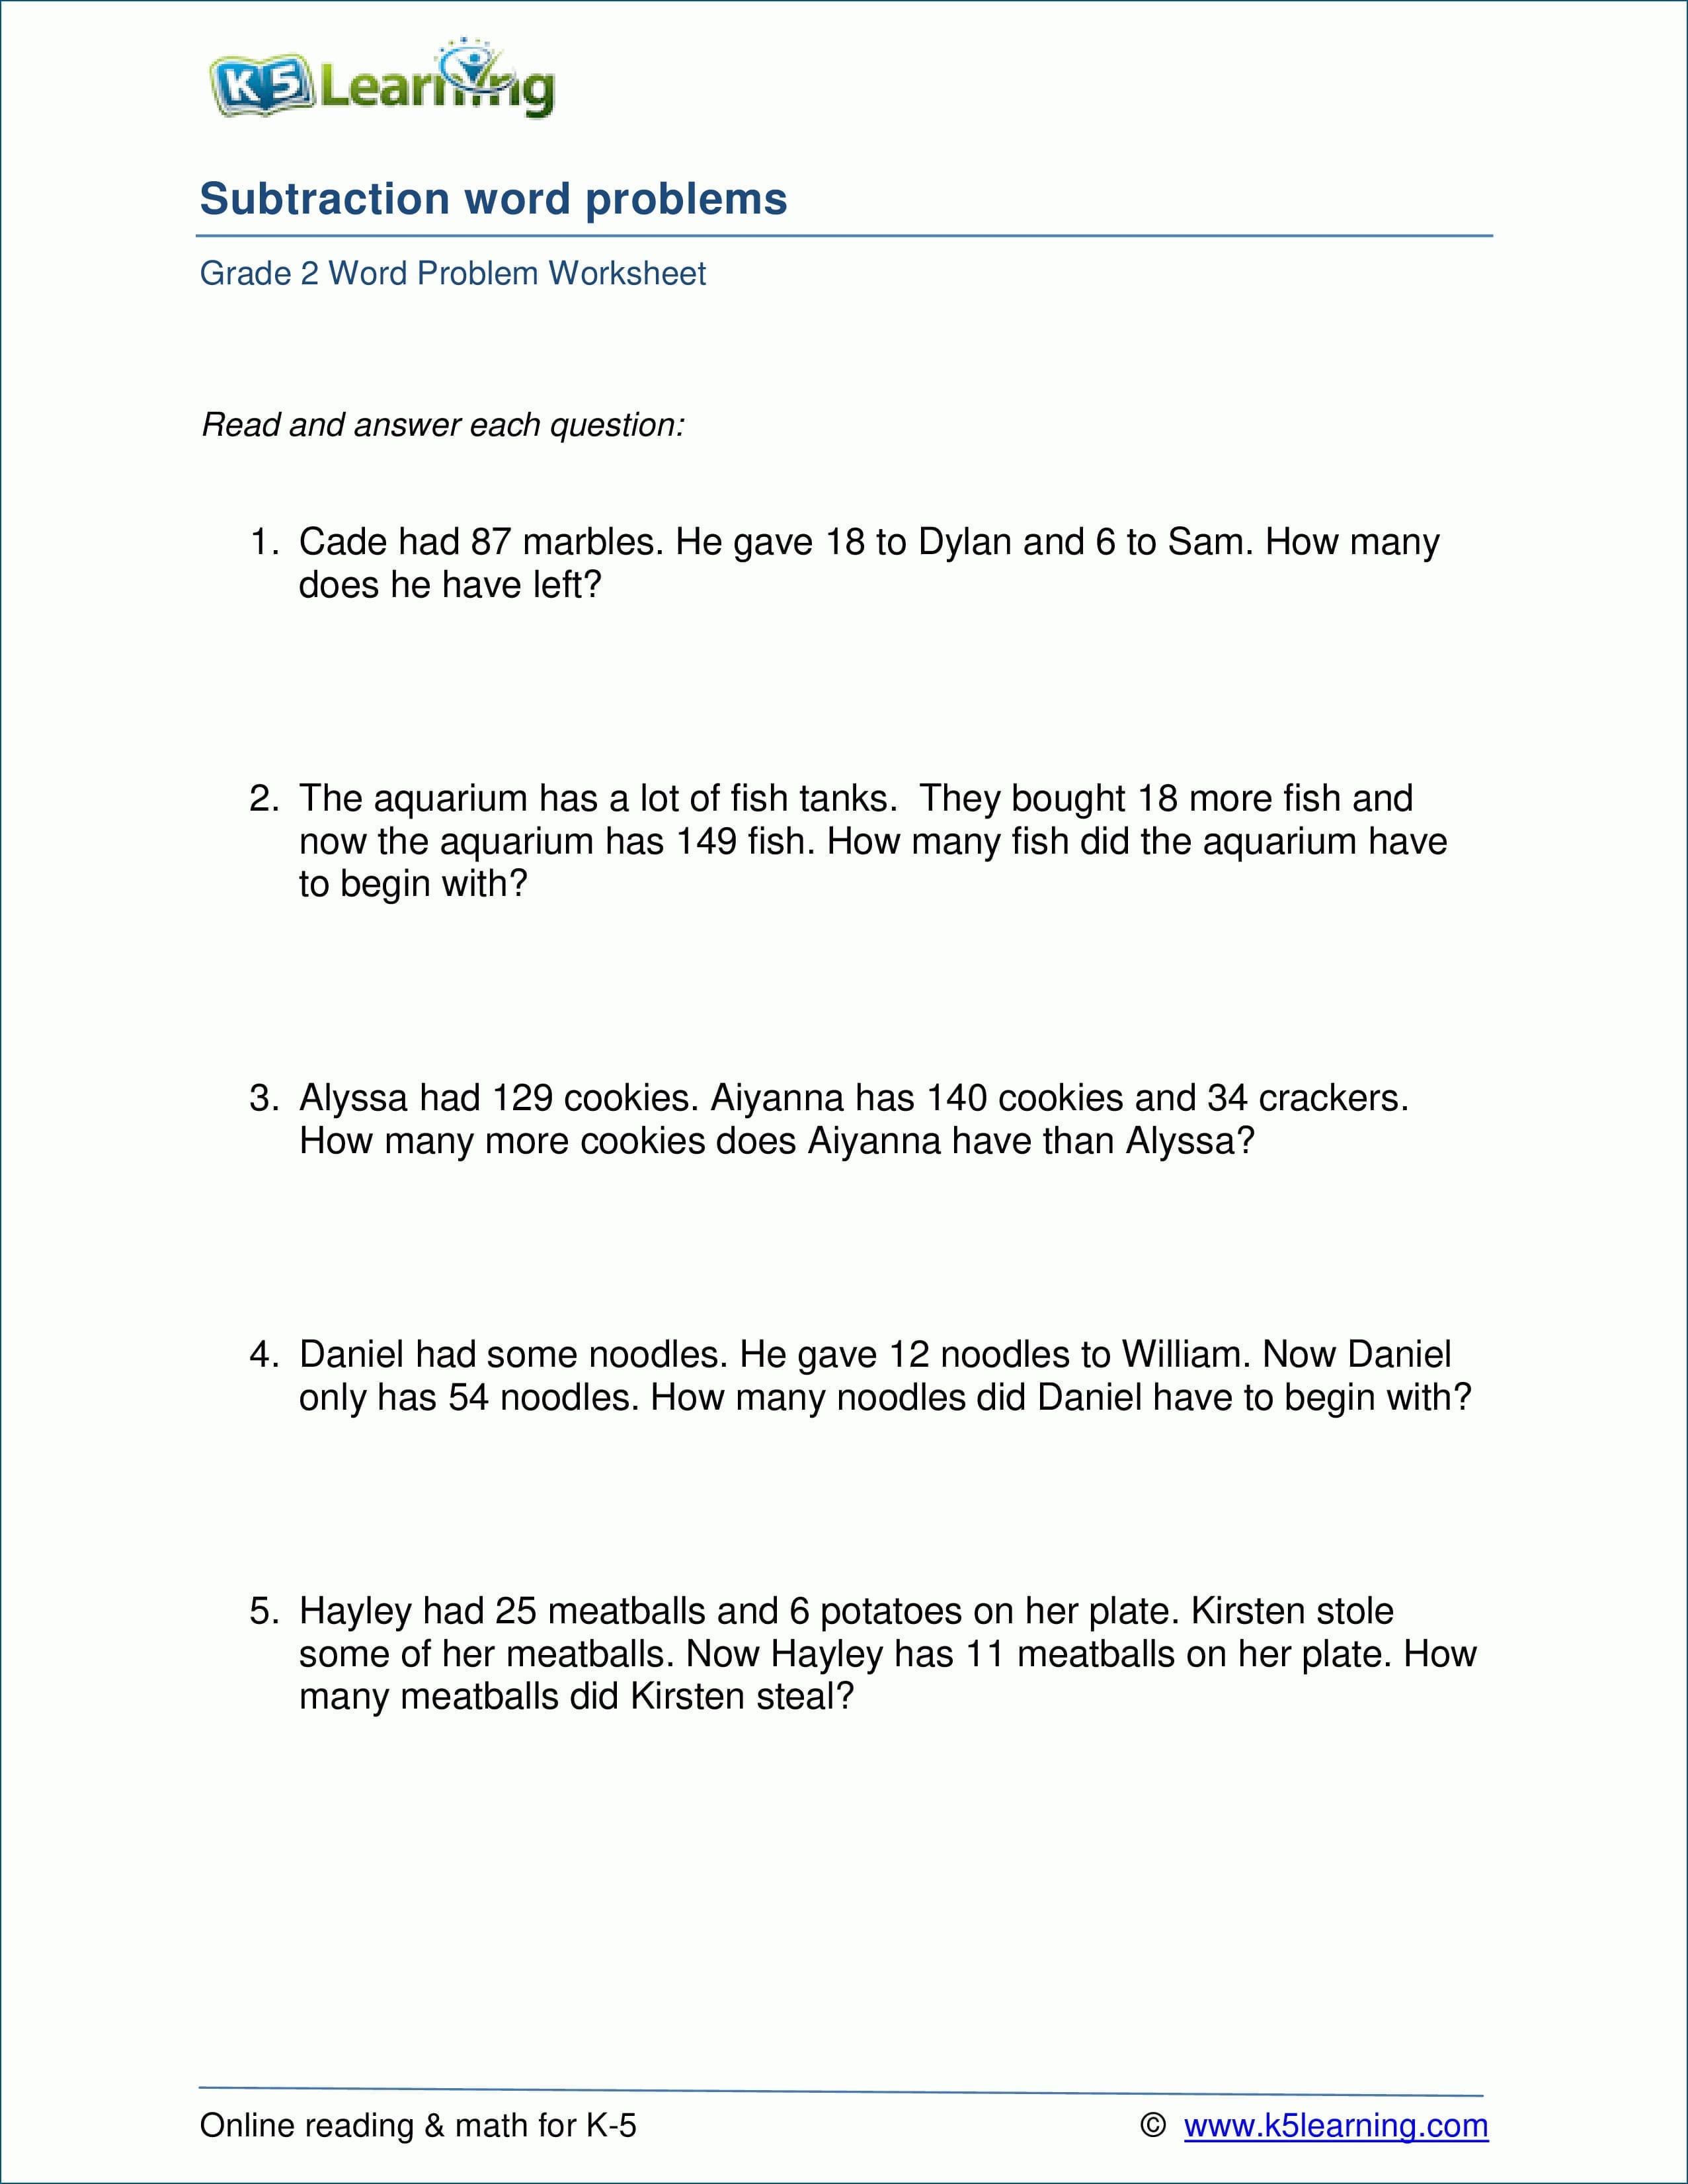 Grade 2 Subtraction Word Problem Worksheets 13 Digits  K5 Learning Regarding K 5 Learning Worksheets